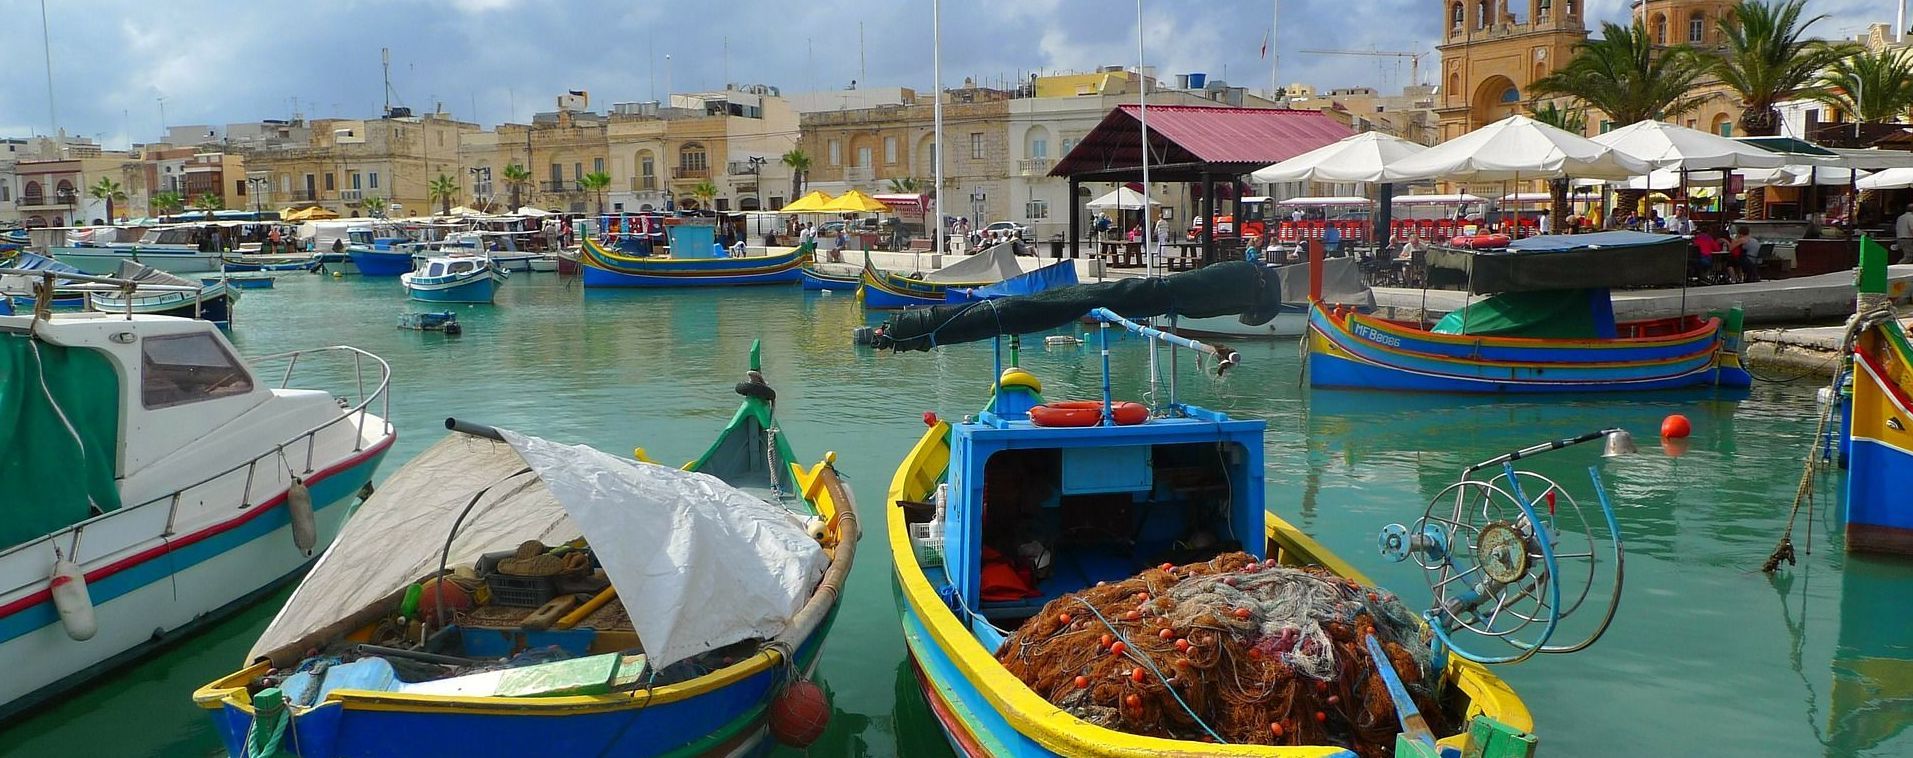 Мальта заплатит туристам до 200 евро за отдых: какие условия